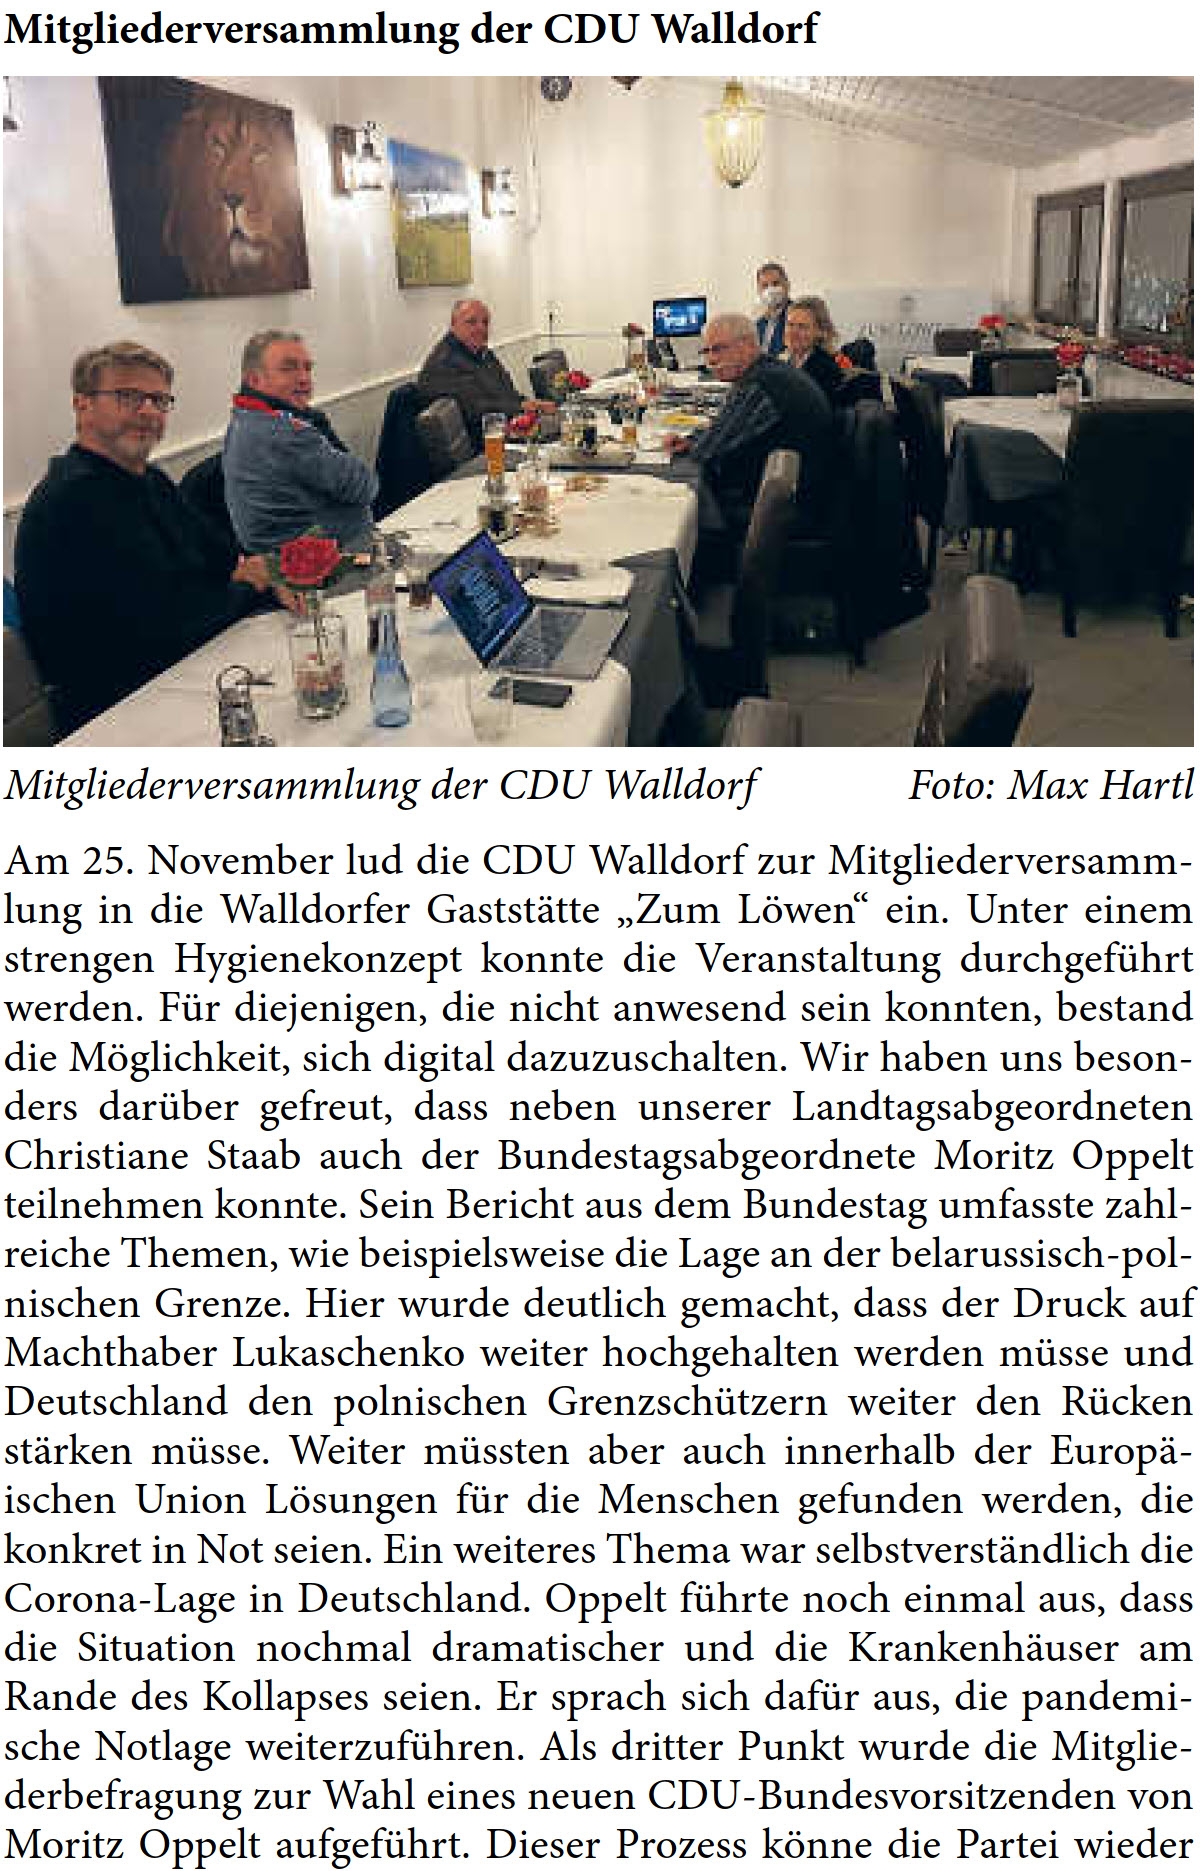 Am 25. November lud die CDU Walldorf zur Mitgliederversamm- lung in die Walldorfer GaststÃ¤tte â€žZum LÃ¶wenâ€œ ein. Unter einem  strengen Hygienekonzept konnte die Veranstaltung durchgefÃ¼hrt  werden. FÃ¼r diejenigen, die nicht anwesend sein konnten, bestand  die MÃ¶glichkeit, sich digital dazuzuschalten. Wir haben uns beson- ders darÃ¼ber gefreut, dass neben unserer Landtagsabgeordneten  Christiane Staab auch der Bundestagsabgeordnete Moritz Oppelt  teilnehmen konnte. Sein Bericht aus dem Bundestag umfasste zahl- reiche Themen, wie beispielsweise die Lage an der belarussisch-pol- nischen Grenze. Hier wurde deutlich gemacht, dass der Druck auf  Machthaber Lukaschenko weiter hochgehalten werden mÃ¼sse und  Deutschland den polnischen GrenzschÃ¼tzern weiter den RÃ¼cken  stÃ¤rken mÃ¼sse. Weiter mÃ¼ssten aber auch innerhalb der EuropÃ¤- ischen Union LÃ¶sungen fÃ¼r die Menschen gefunden werden, die  konkret in Not seien. Ein weiteres Thema war selbstverstÃ¤ndlich die  Corona-Lage in Deutschland. Oppelt fÃ¼hrte noch einmal aus, dass  die Situation nochmal dramatischer und die KrankenhÃ¤user am  Rande des Kollapses seien. Er sprach sich dafÃ¼r aus, die pandemi- sche Notlage weiterzufÃ¼hren. Als dritter Punkt wurde die Mitglie- derbefragung zur Wahl eines neuen CDU-Bundesvorsitzenden von  Moritz Oppelt aufgefÃ¼hrt. Dieser Prozess kÃ¶nne die Partei wieder